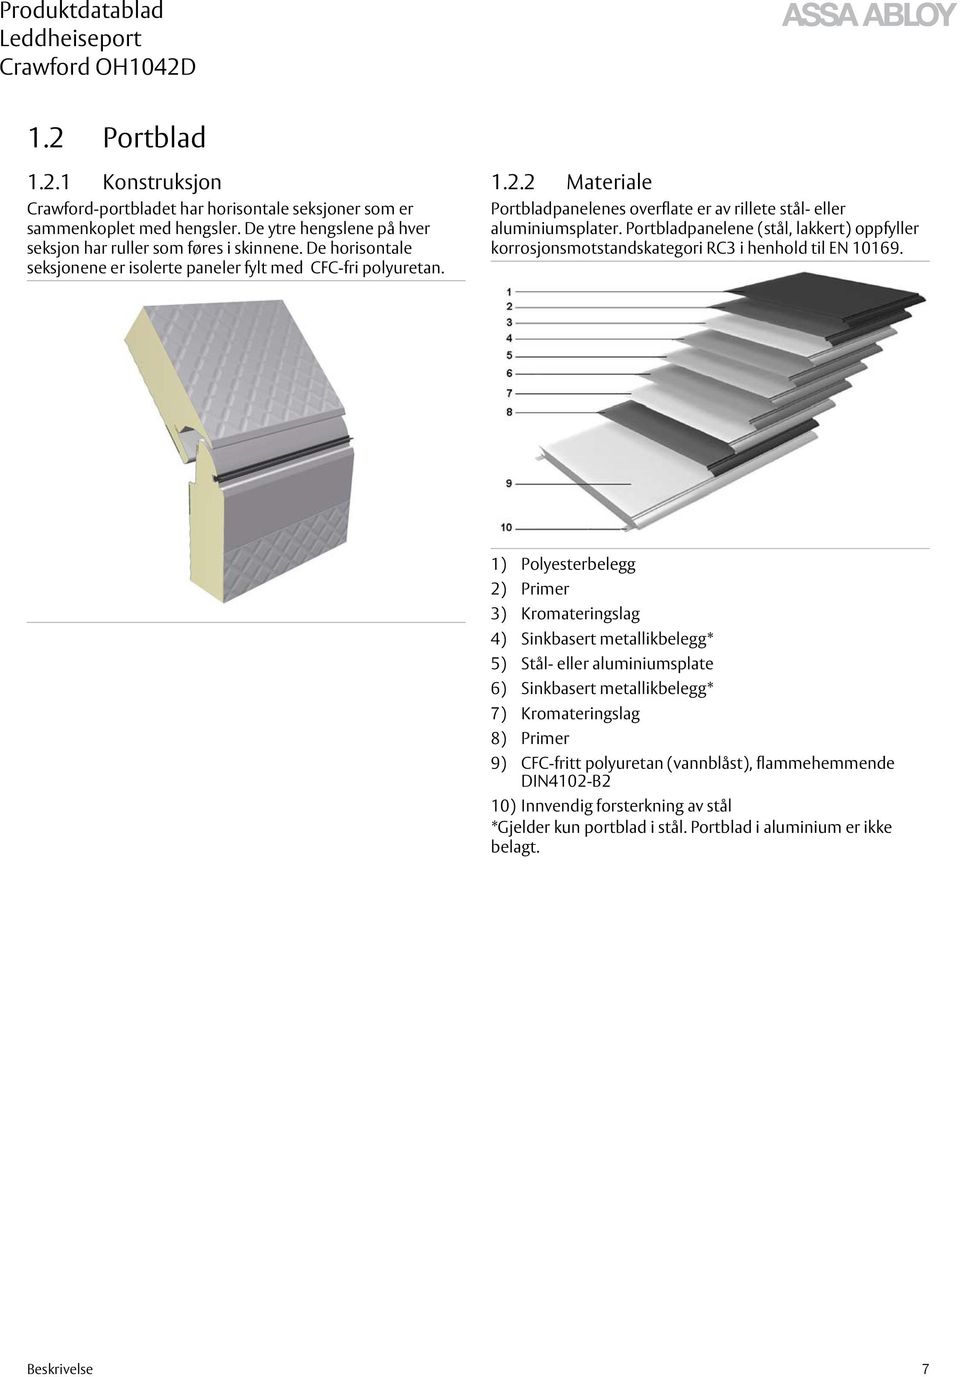 Portbladpanelene (stål, lakkert) oppfyller korrosjonsmotstandskategori RC3 i henhold til EN 10169.